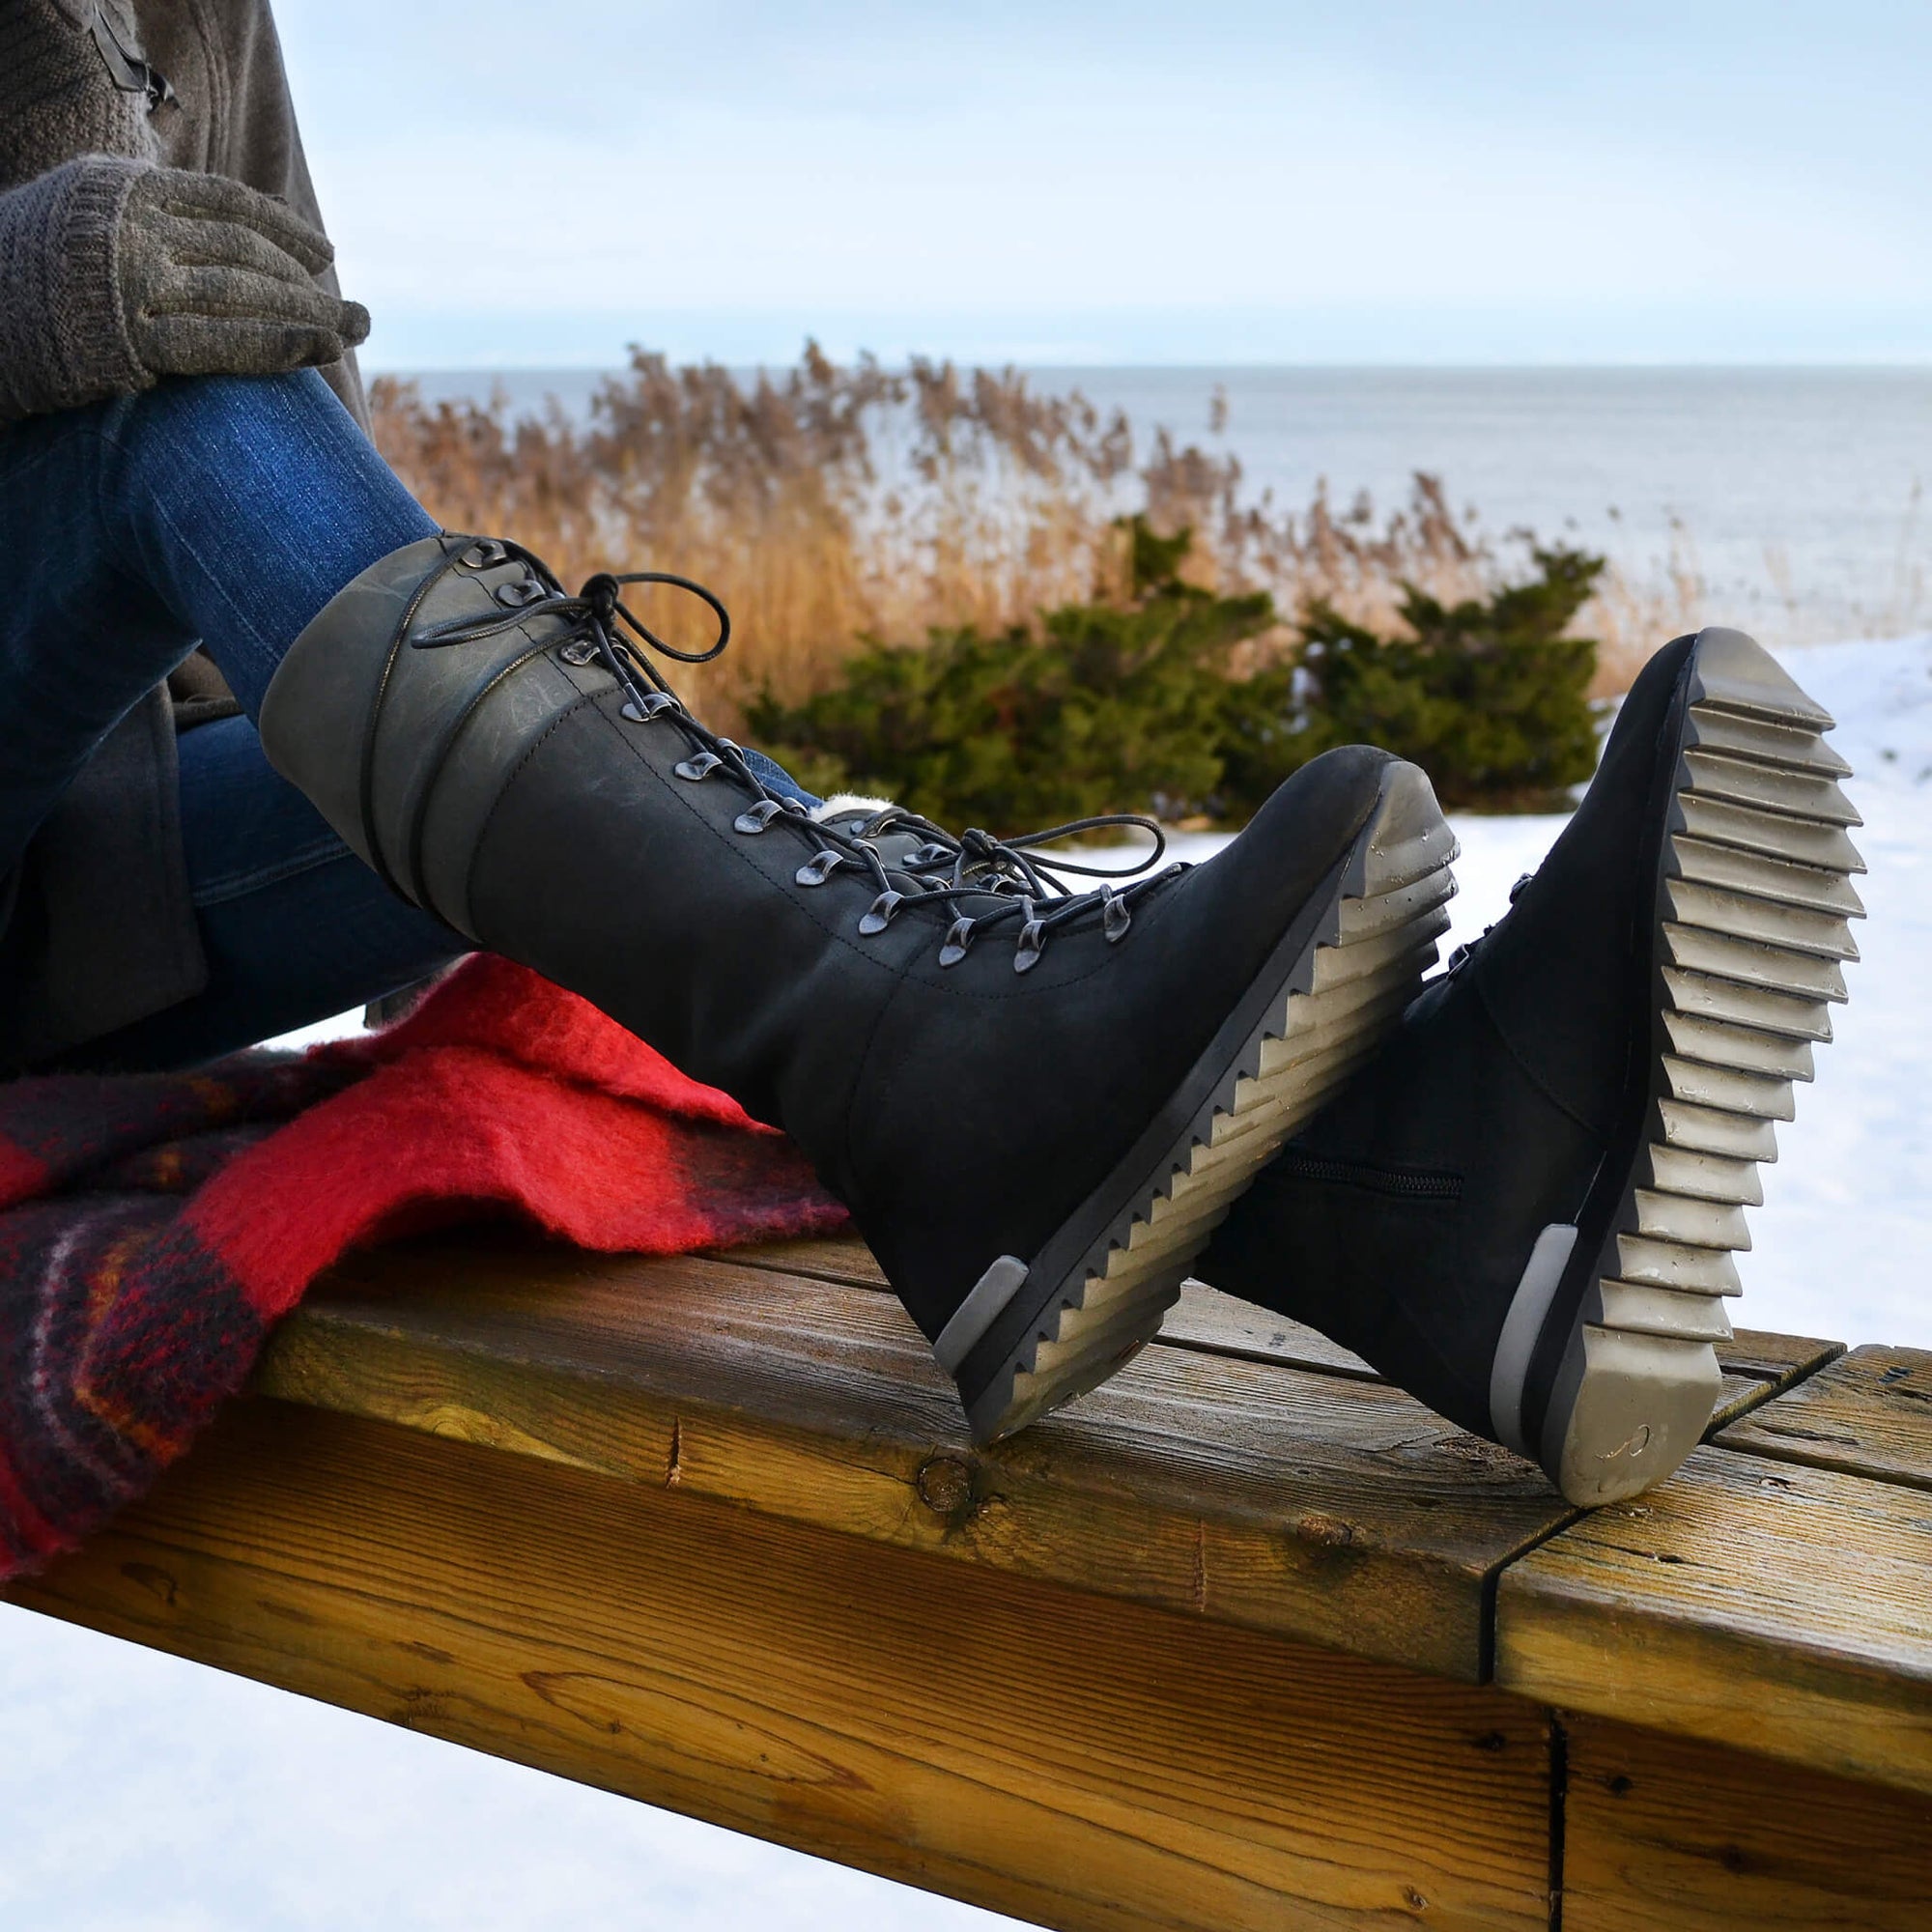 Peak Winter Boot for Women -  Bordo-Black